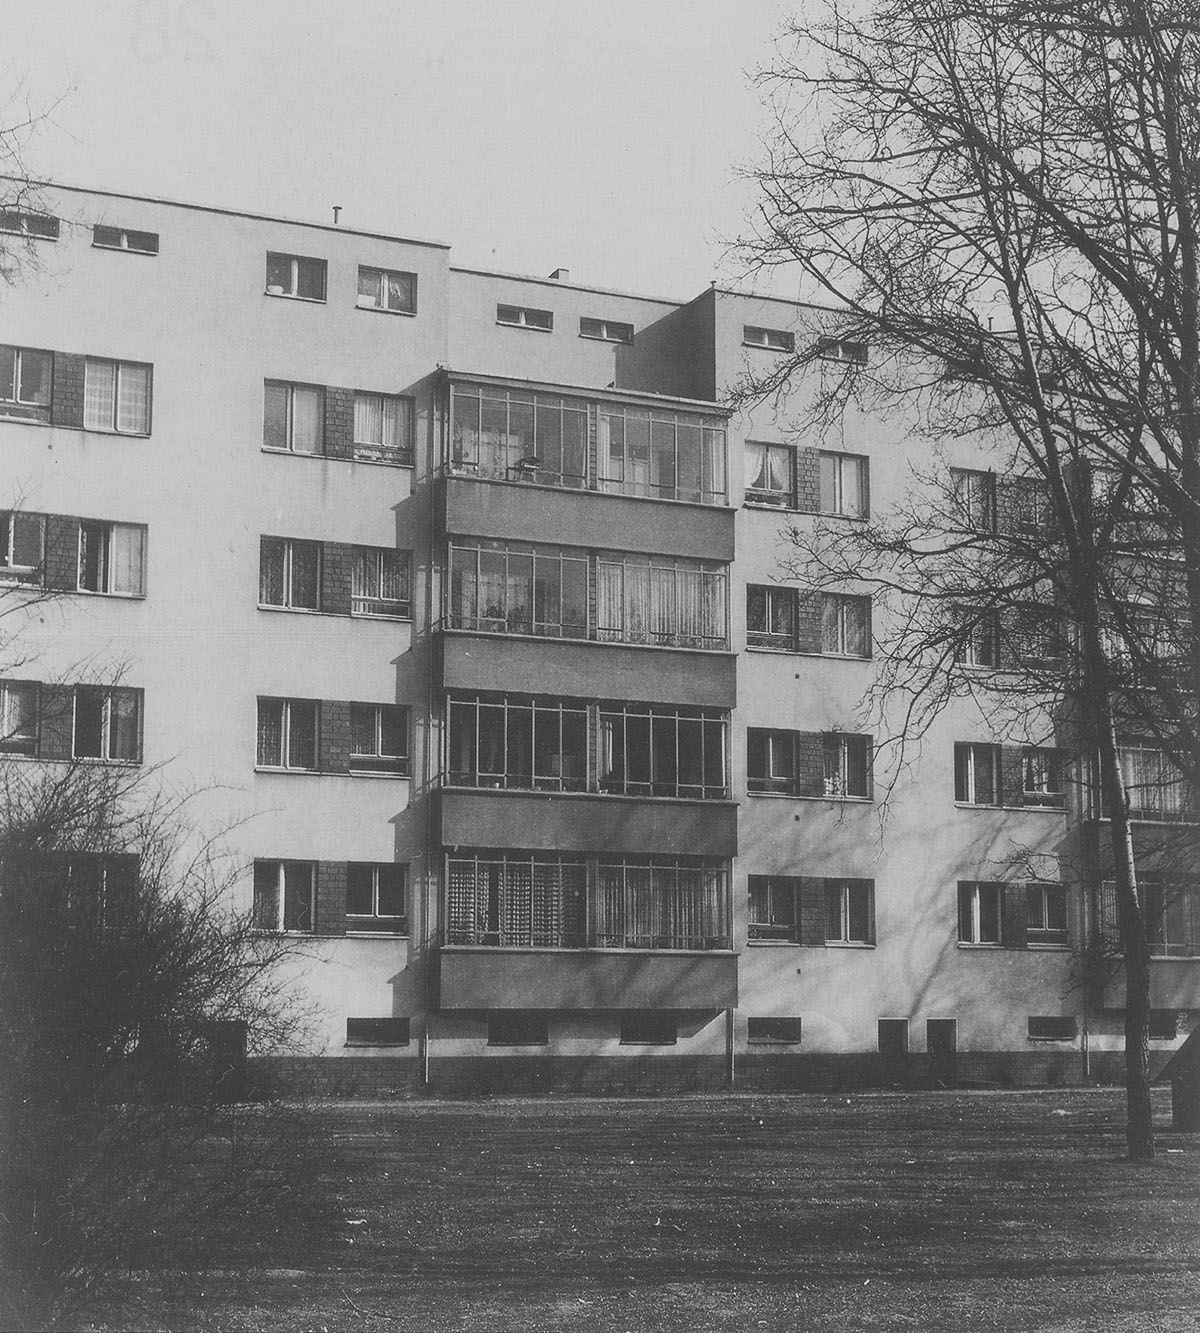 Siemensstadt, lakóépület három és fél szobás lakásokkal (1929–1930) (Kép forrása: Probst – Schädlich: Walter Gropius)